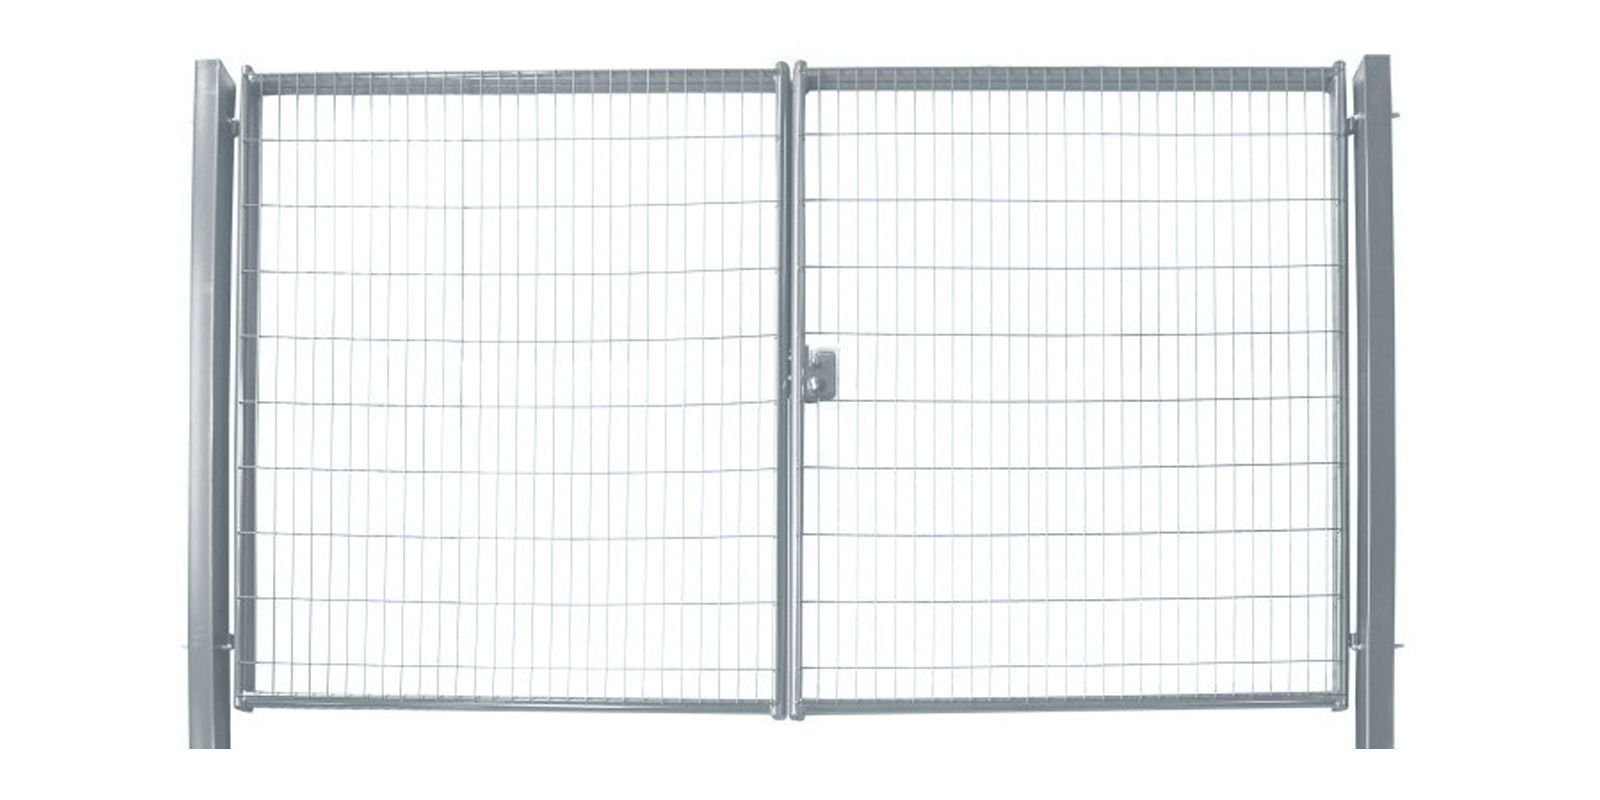 Ворота для панельного ограждения Medium, 2,03 м, ширина 5 м, изображение, фото | Сталь ТД